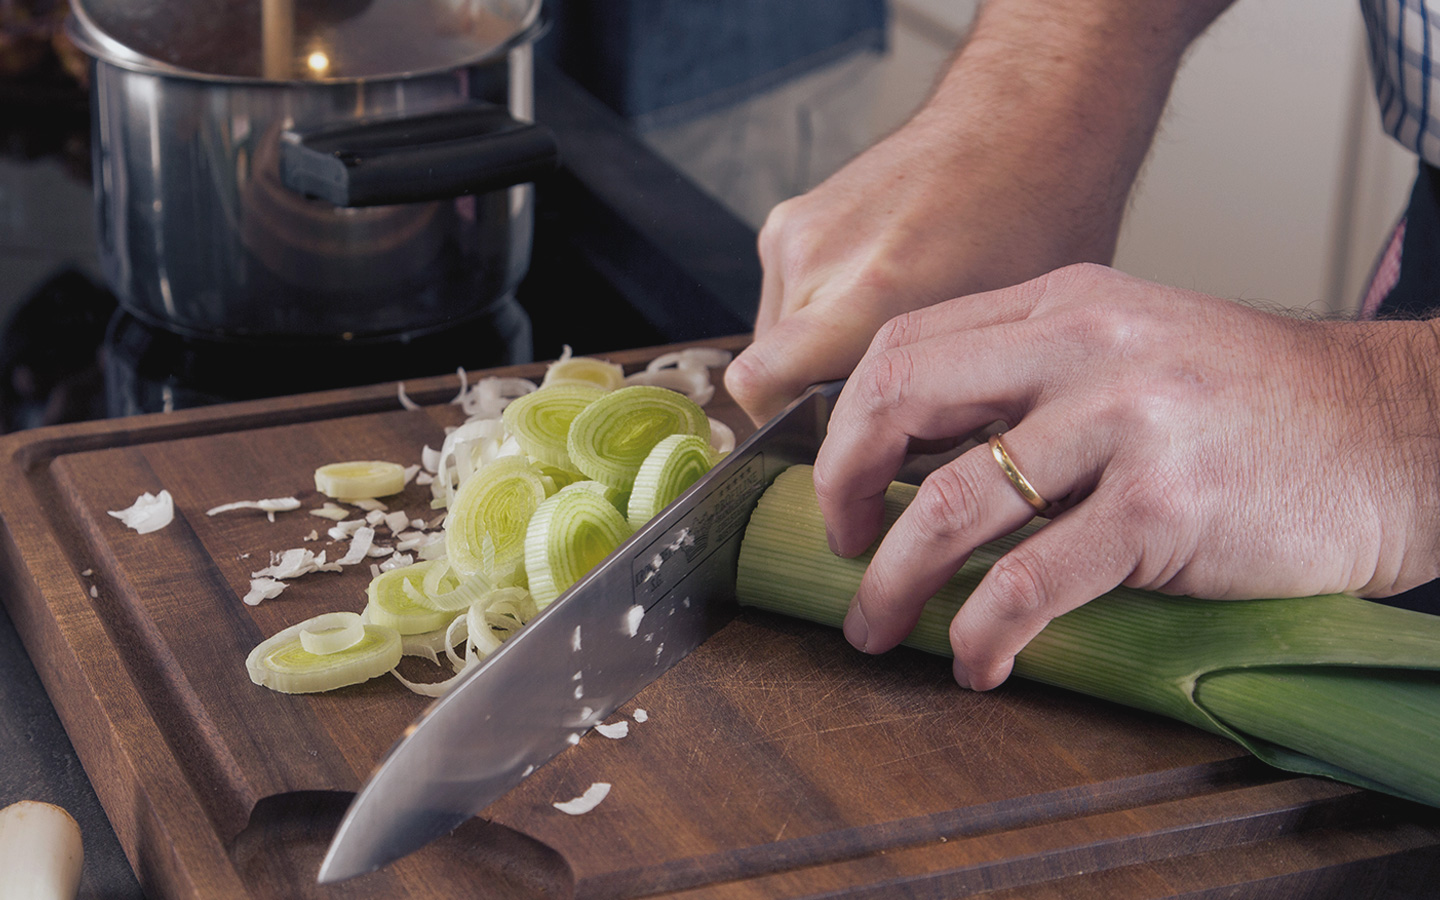 Foto: Ein Mann schneidet eine Stange Porree mit einem Messer.